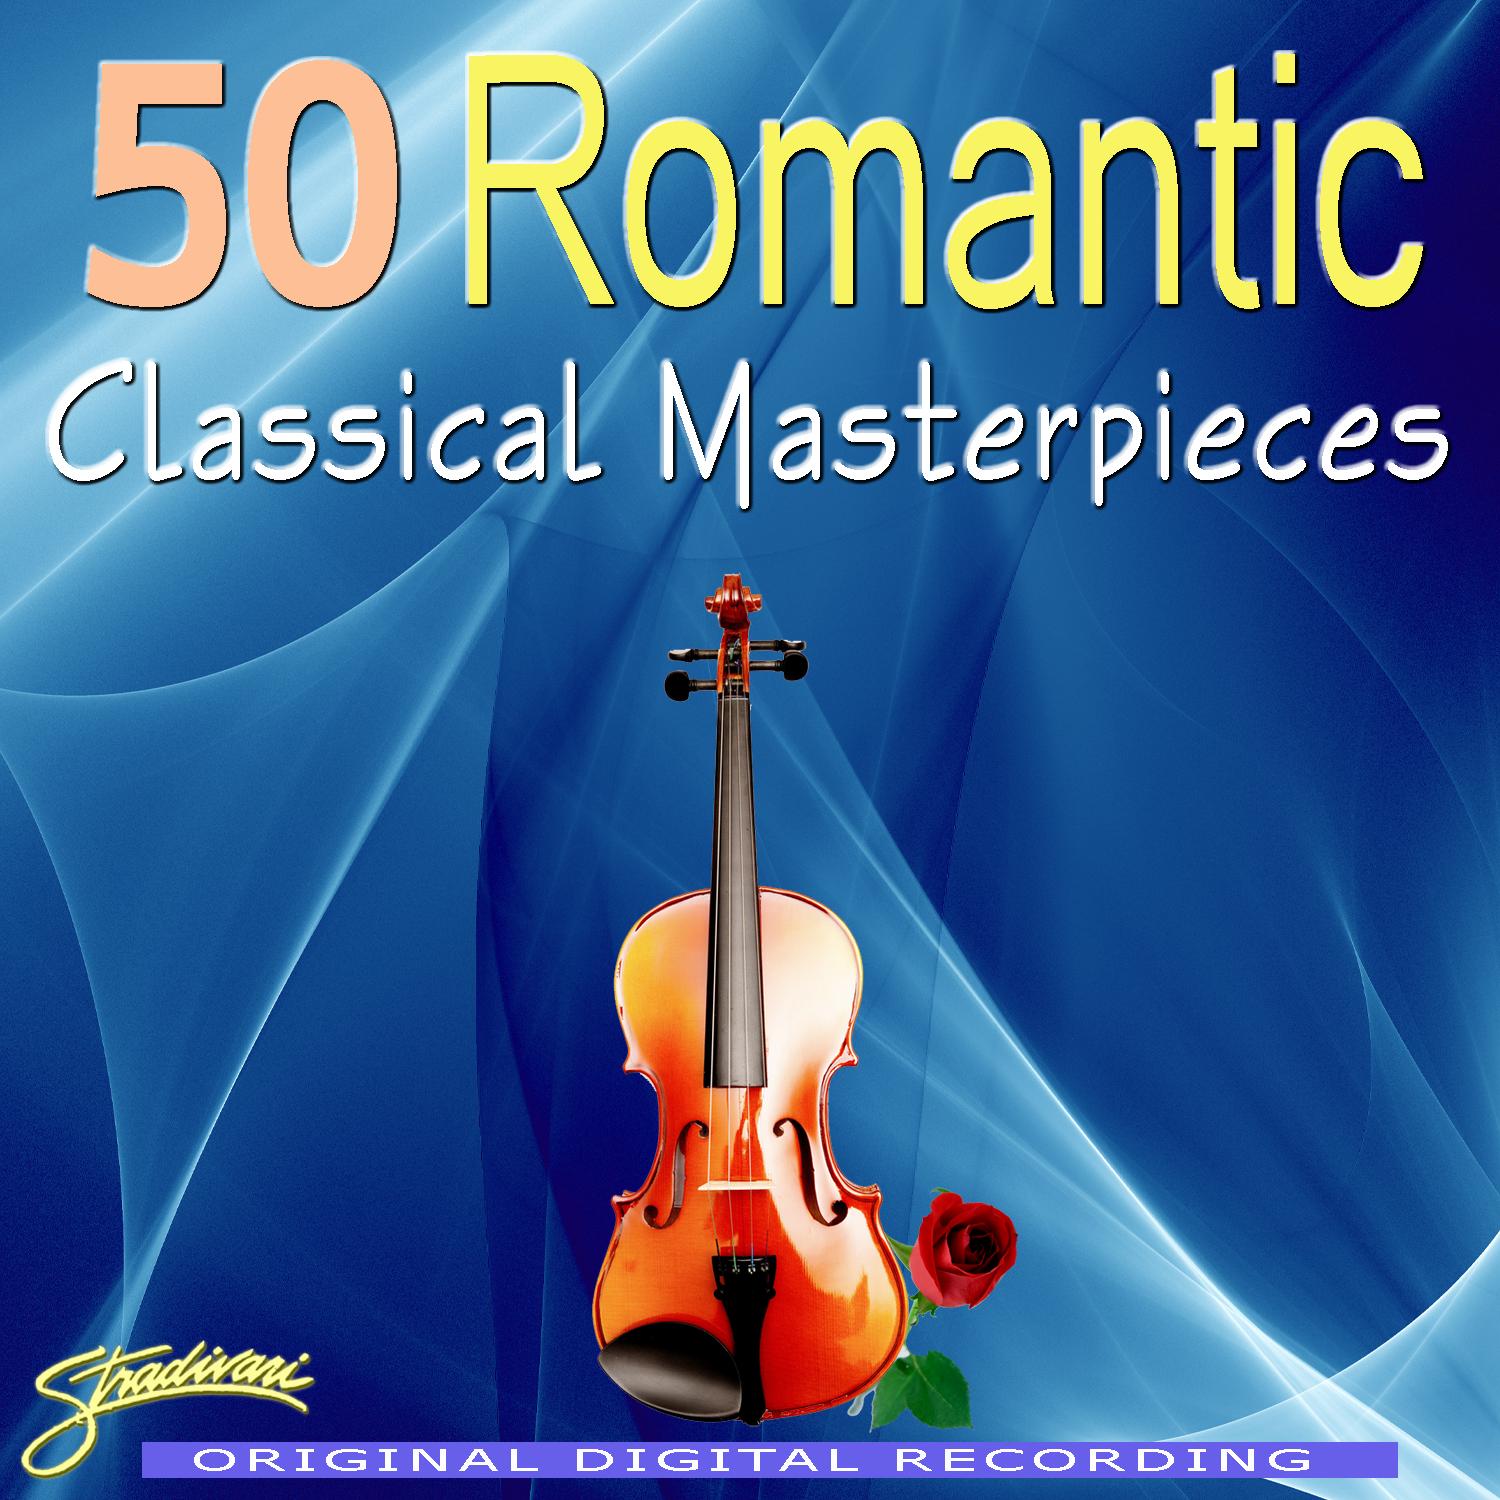 50 Romantic Classical Masterpieces Volumes 1-5